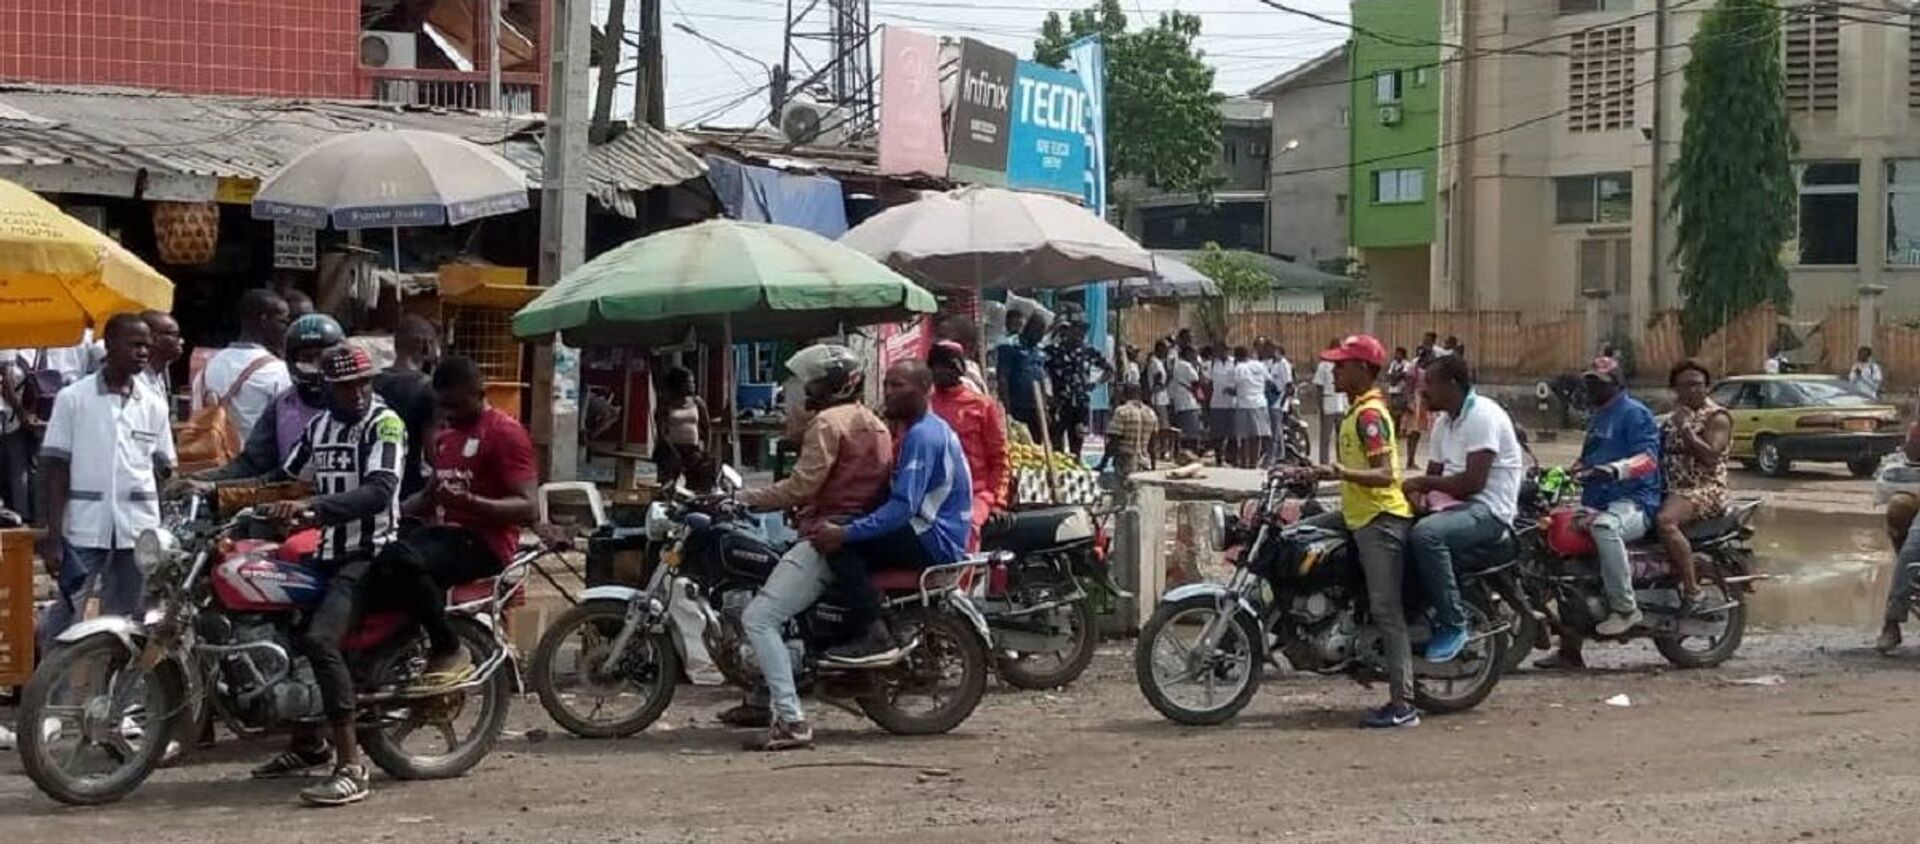 Des chauffeurs de mototaxi et des passagers non masqués dans un carrefour de Douala. - Sputnik Afrique, 1920, 02.02.2021